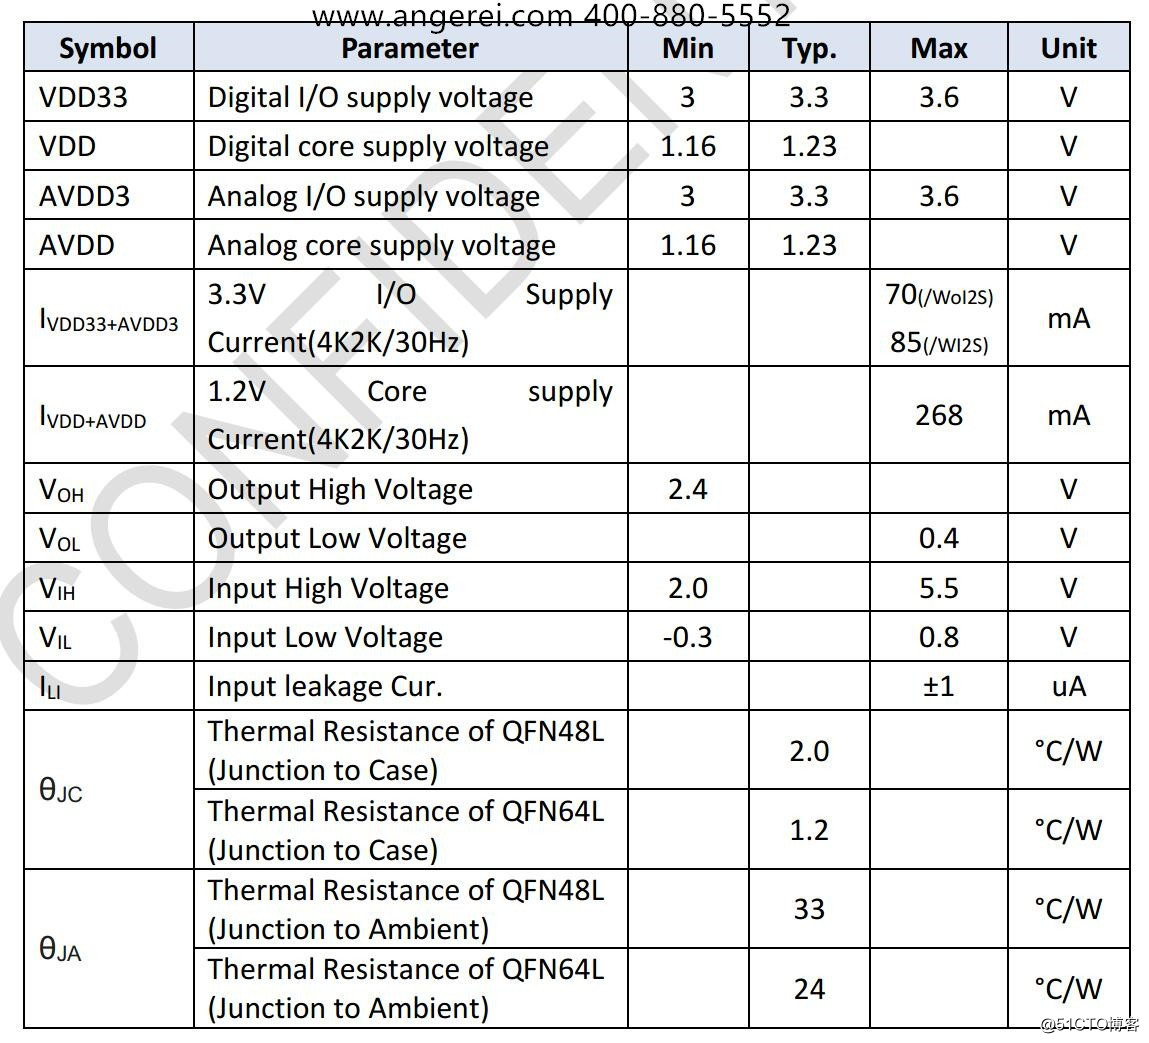 AG9311MAQ| AG9311MCQ|Type-C转HDMI带PD|Type-C转HDMI带PD